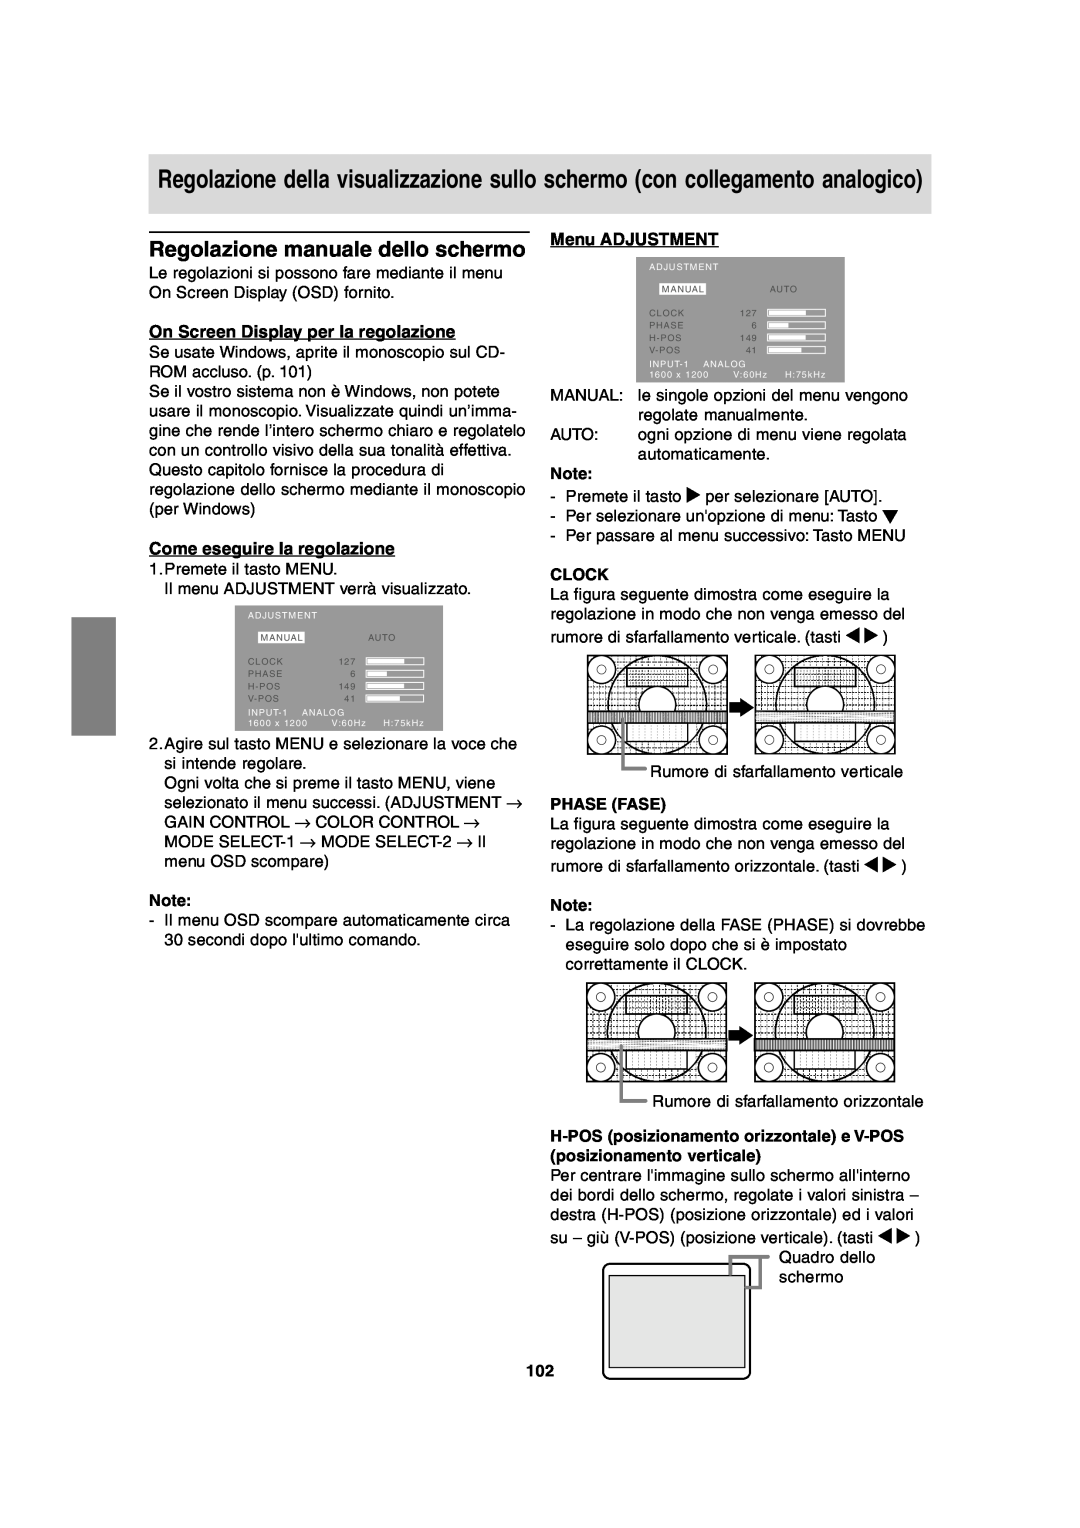 Sharp LL-T2020 Regolazione manuale dello schermo, On Screen Display per la regolazione, Phase Fase, Menu ADJUSTMENT, Clock 